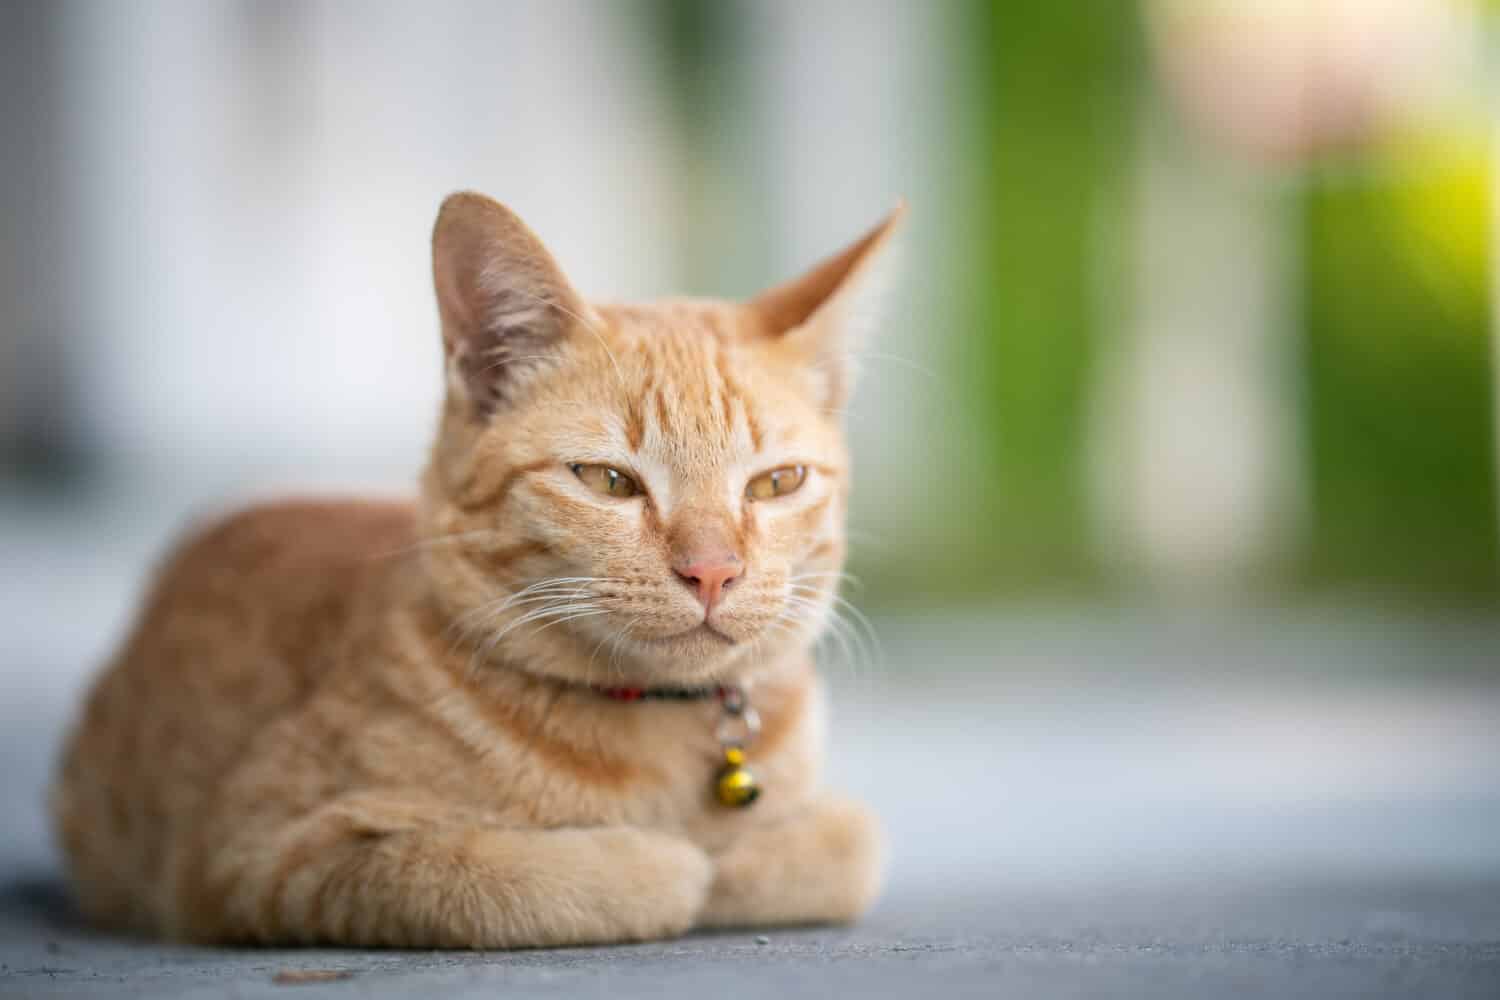 Il gatto giallo si siede nella posa della pagnotta, gli occhi semichiusi.